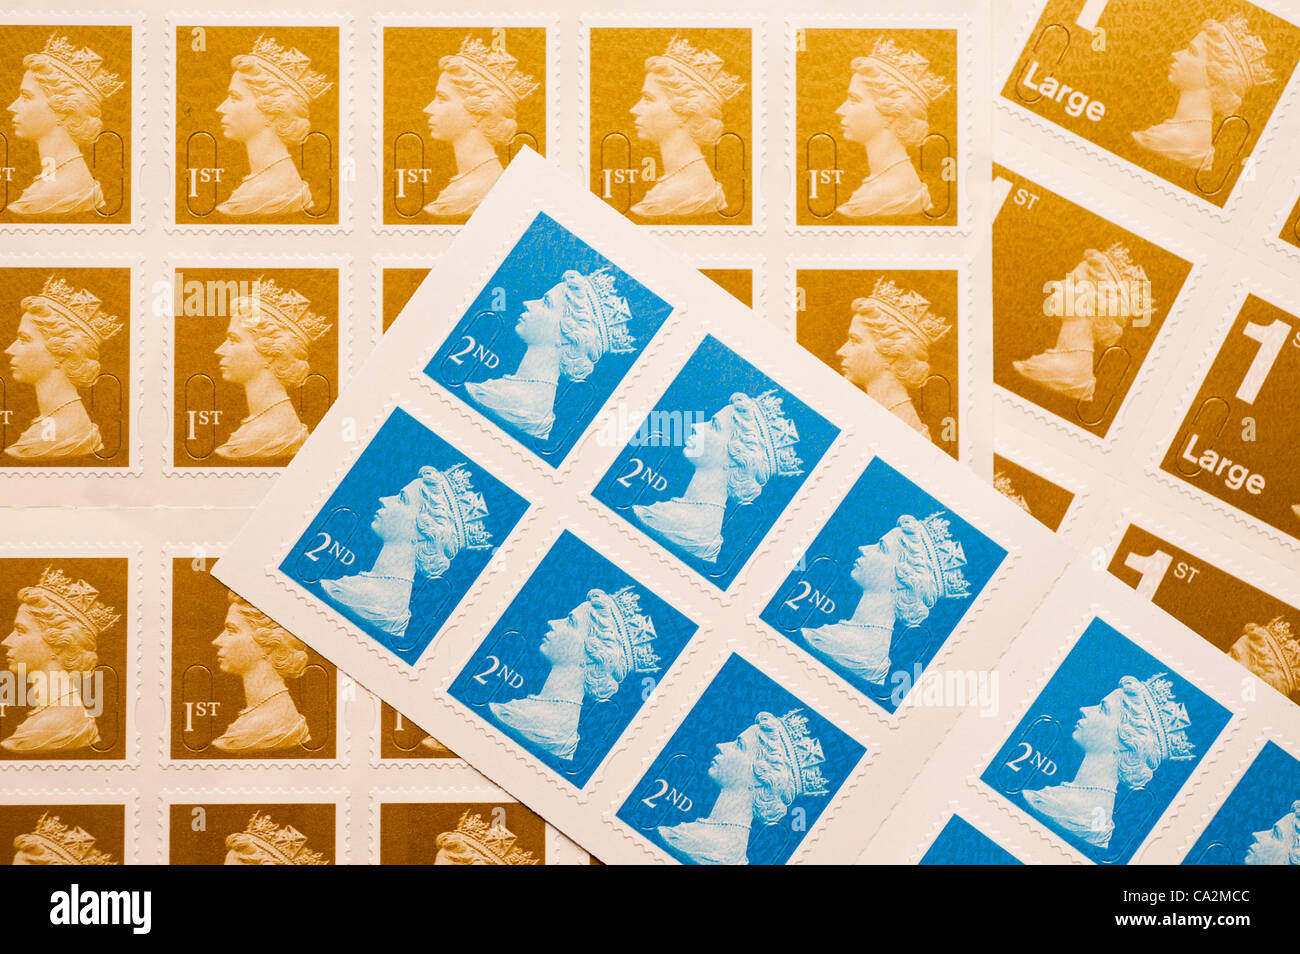 27 mars 2012 un timbre-poste de première classe va augmenter de 30  % dans le prix de 46p à 60p du 30 avril 2012 après le régulateur britannique allégé de contrôle des prix sur Royal Mail Banque D'Images